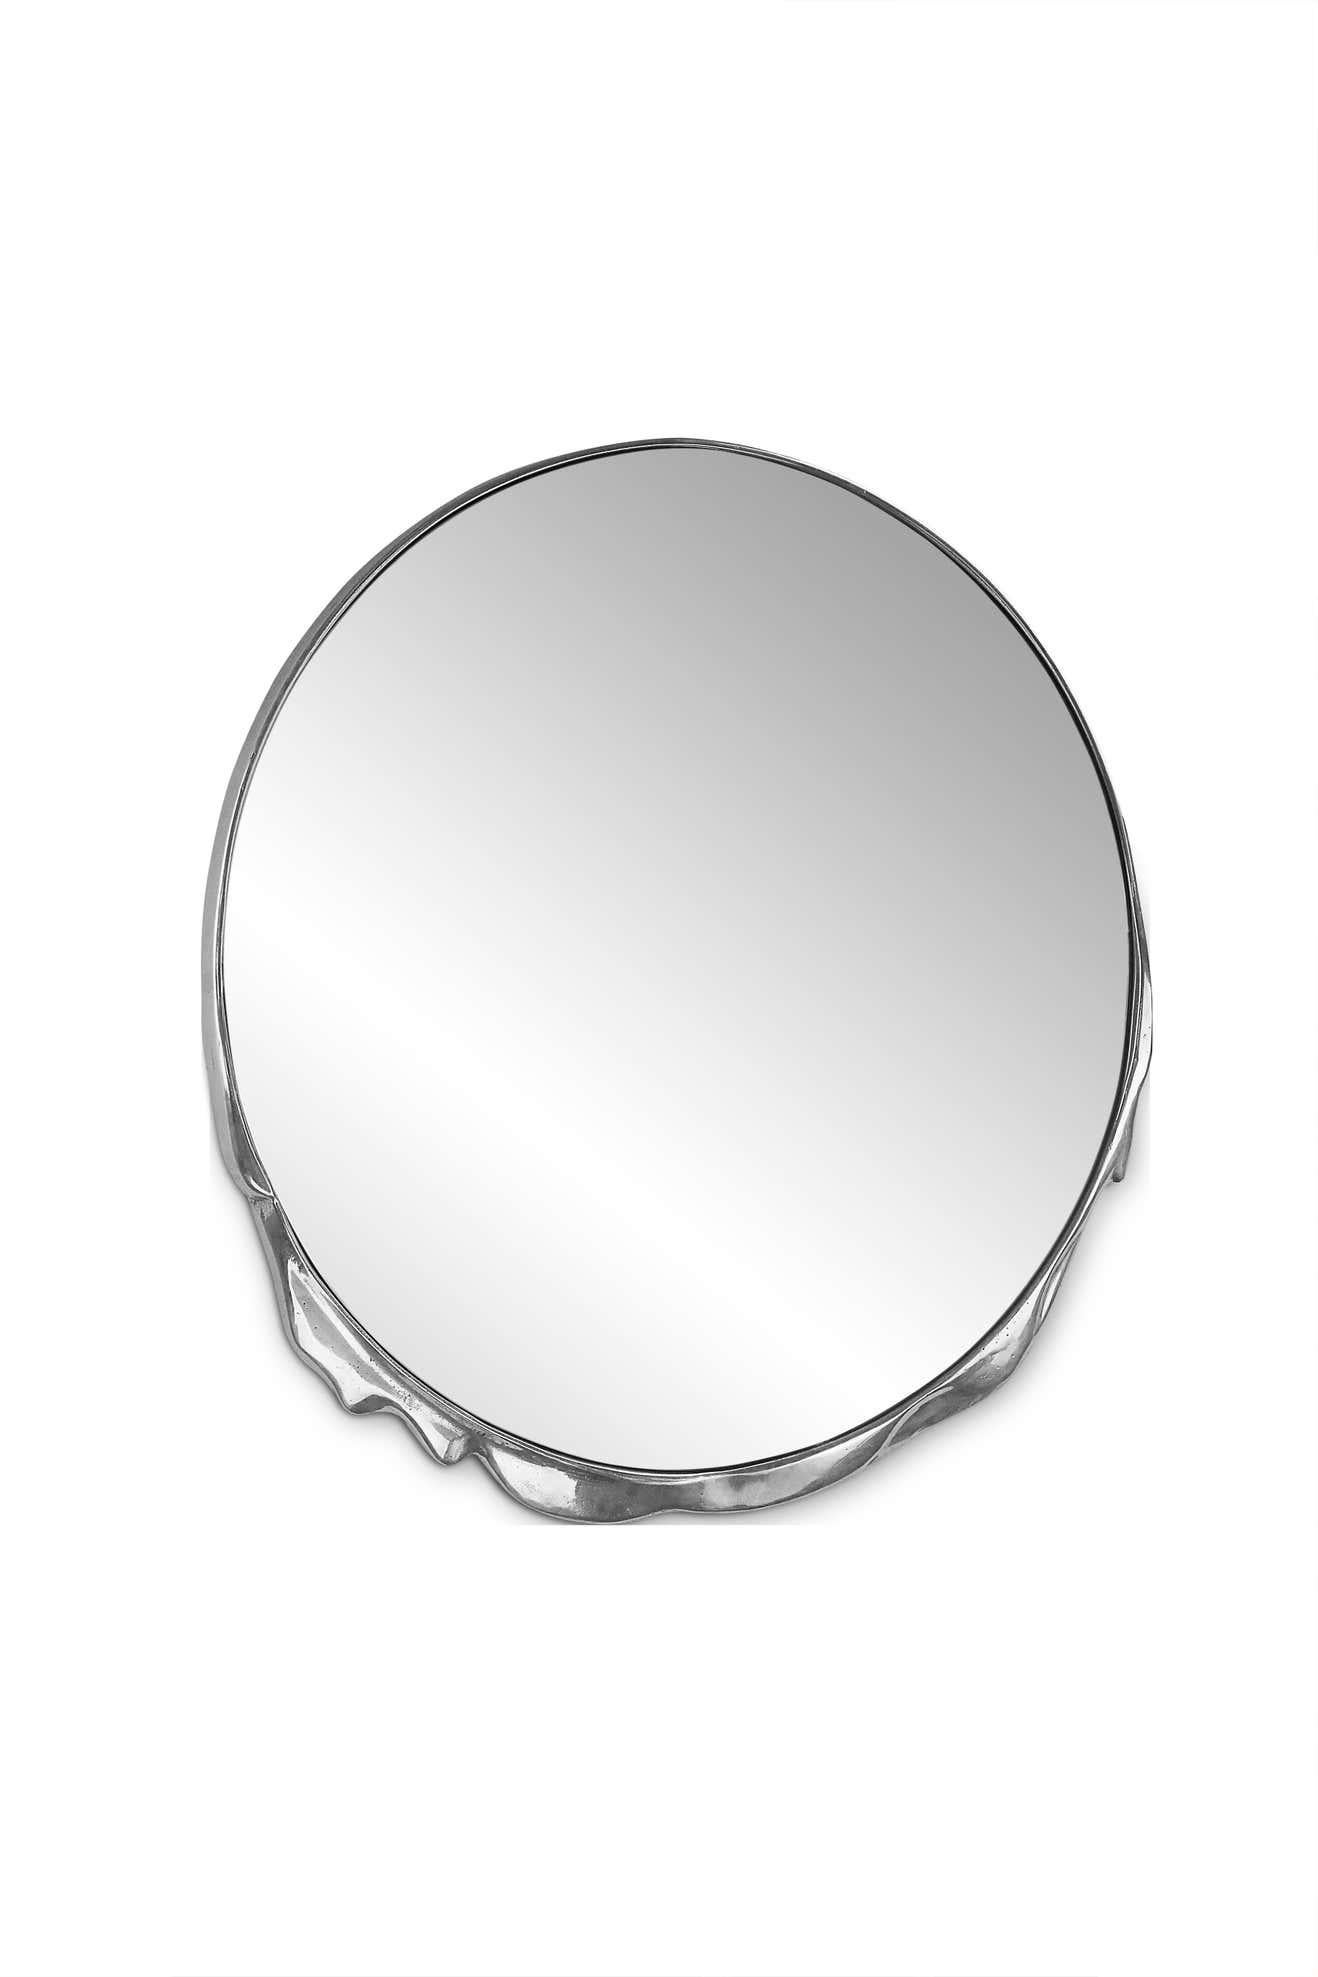 Métal liquide miroir
Aluminium moulé poli et miroir.
Temps de production estimé : 15 à 16 semaines
Mesures : Hauteur : 100 cm
Largeur : 90 cm
Profondeur : 6 cm.